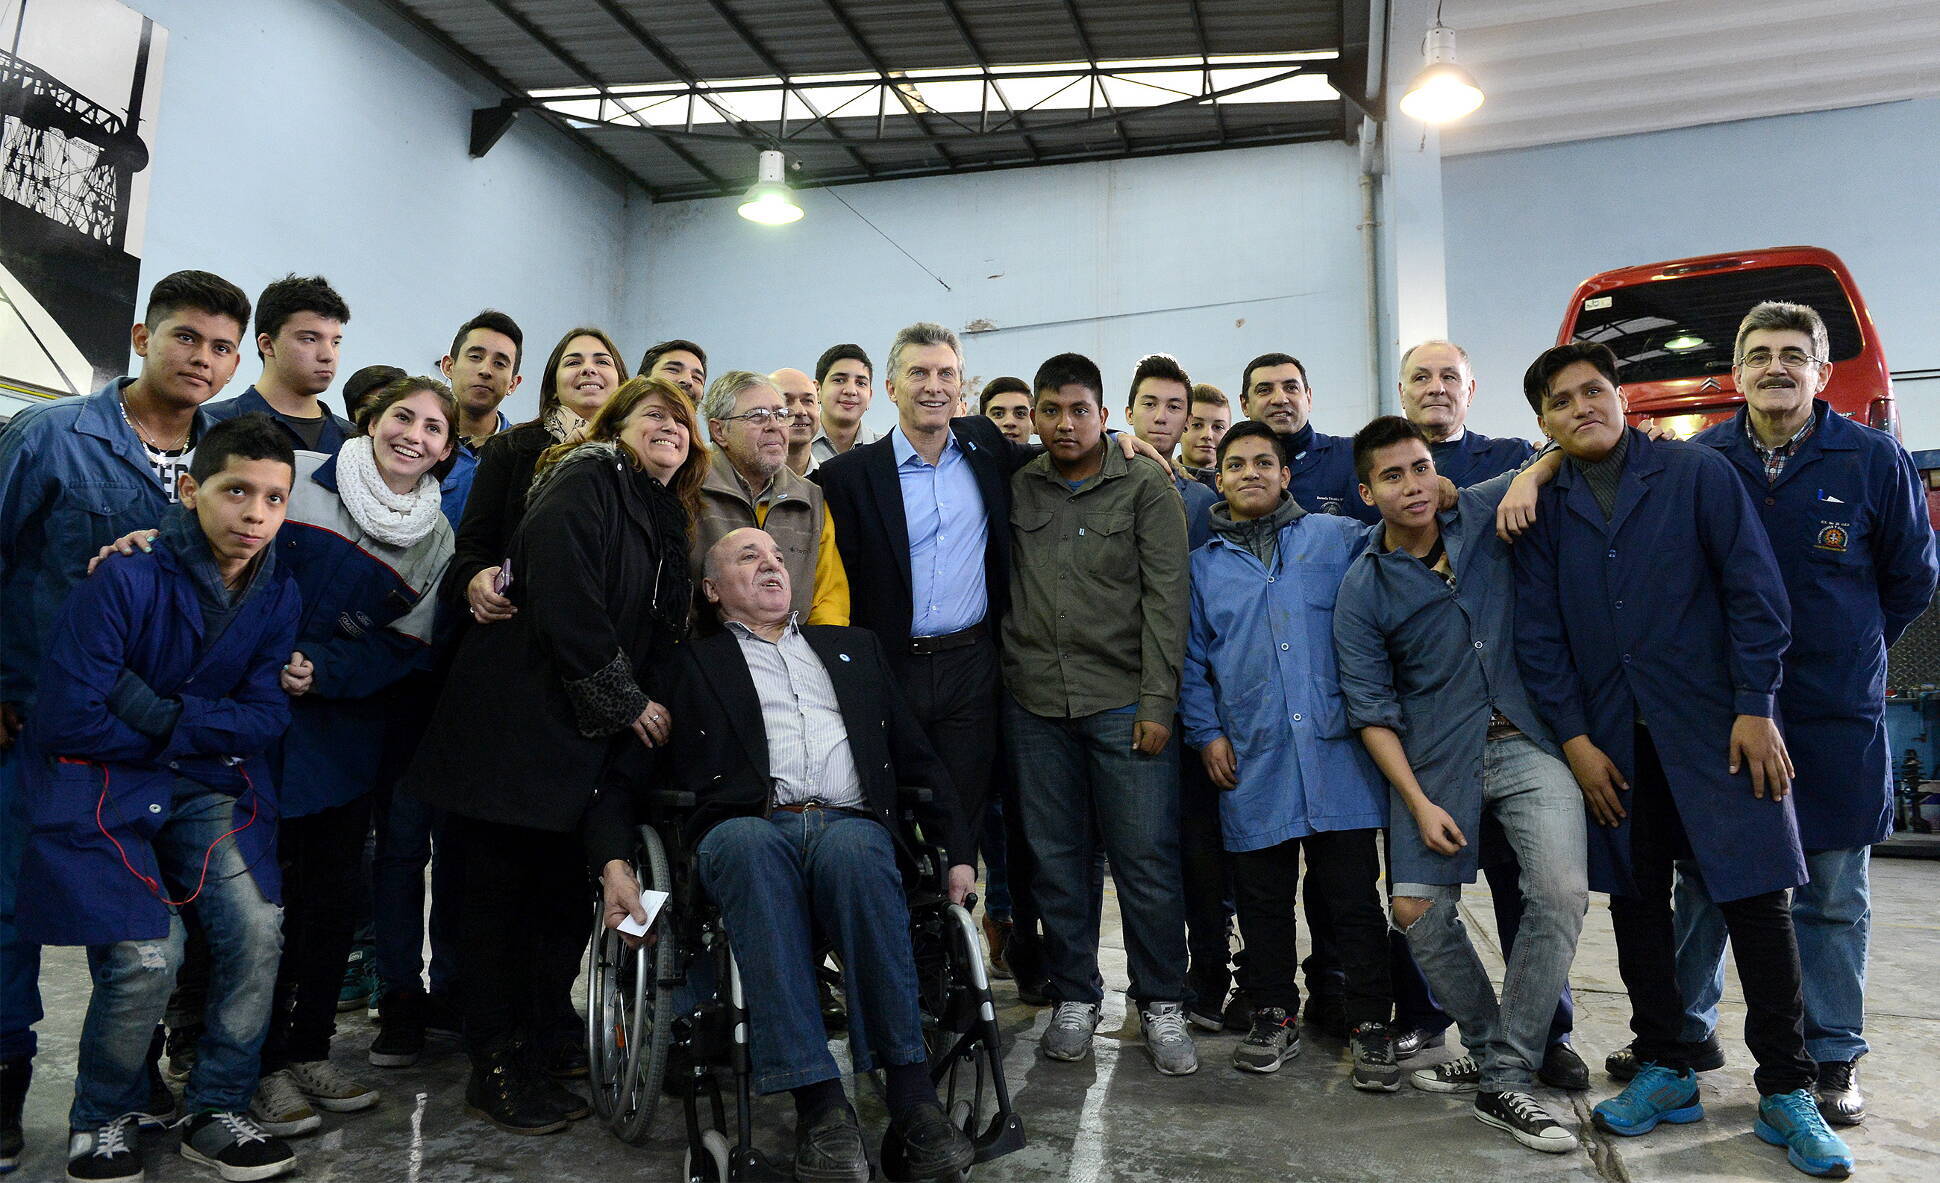 El presidente Macri visitó a estudiantes que reparan sillas de ruedas para el PAMI